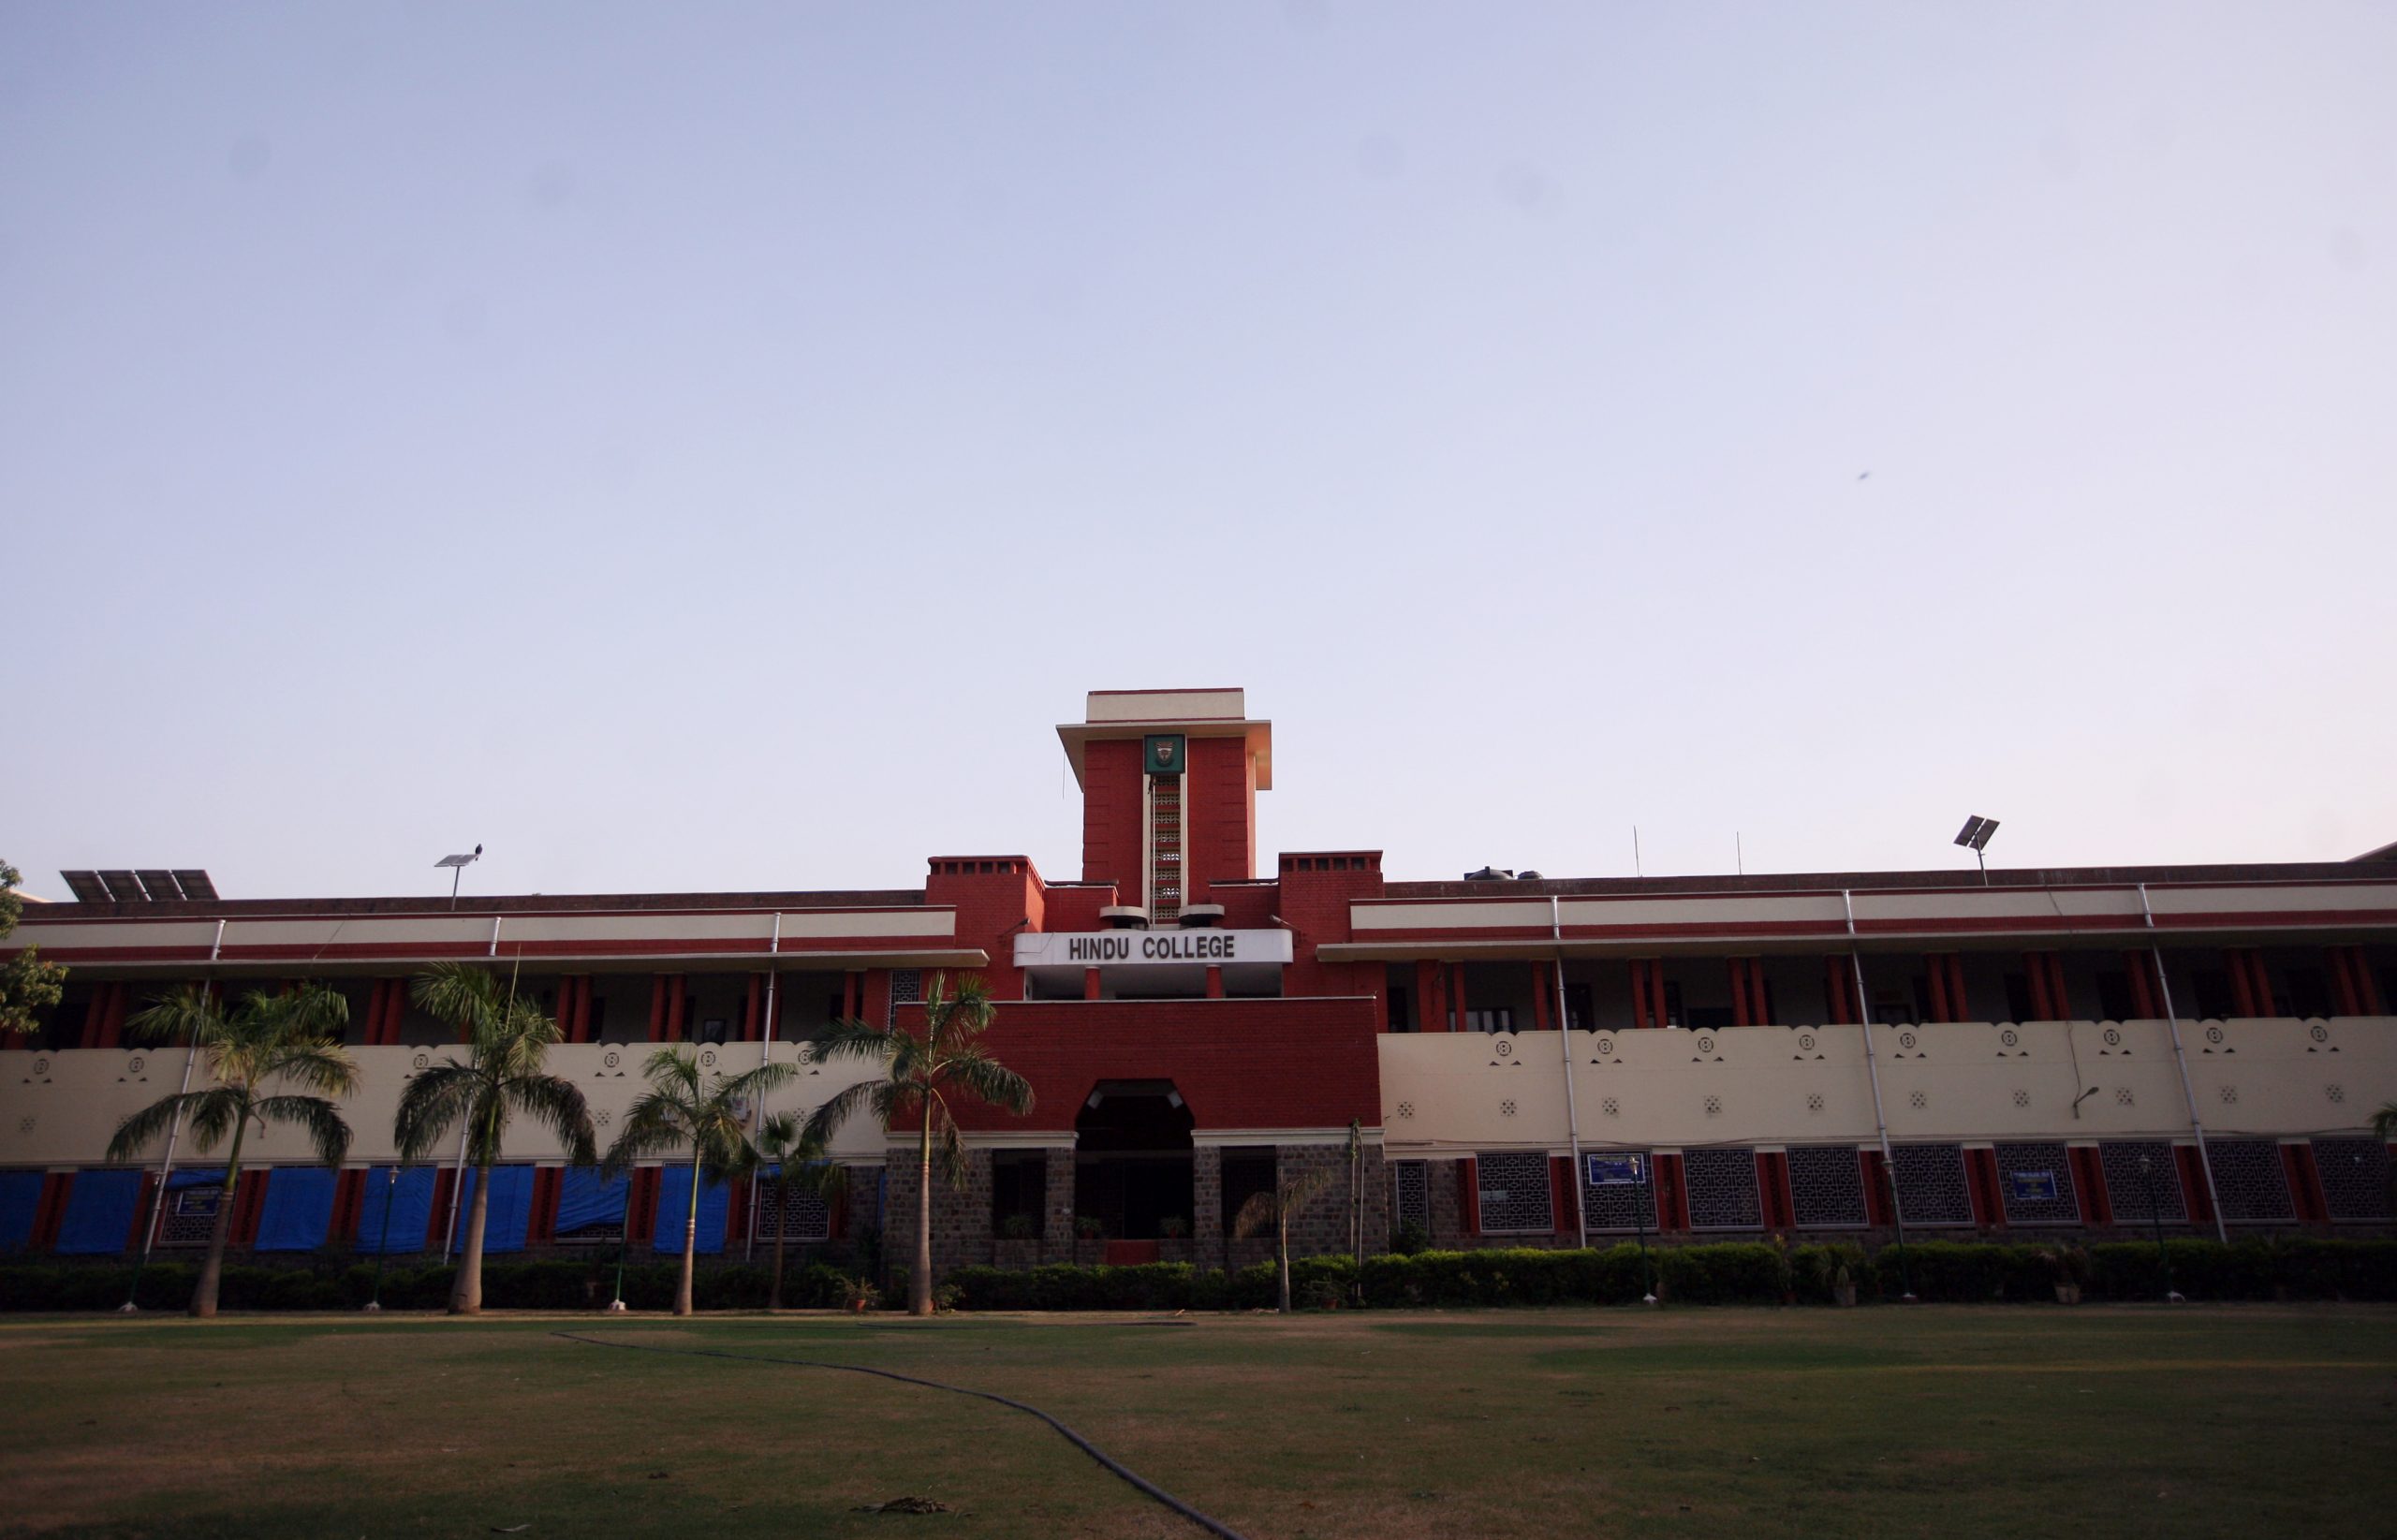 Why did Jinnah visit Hindu College?